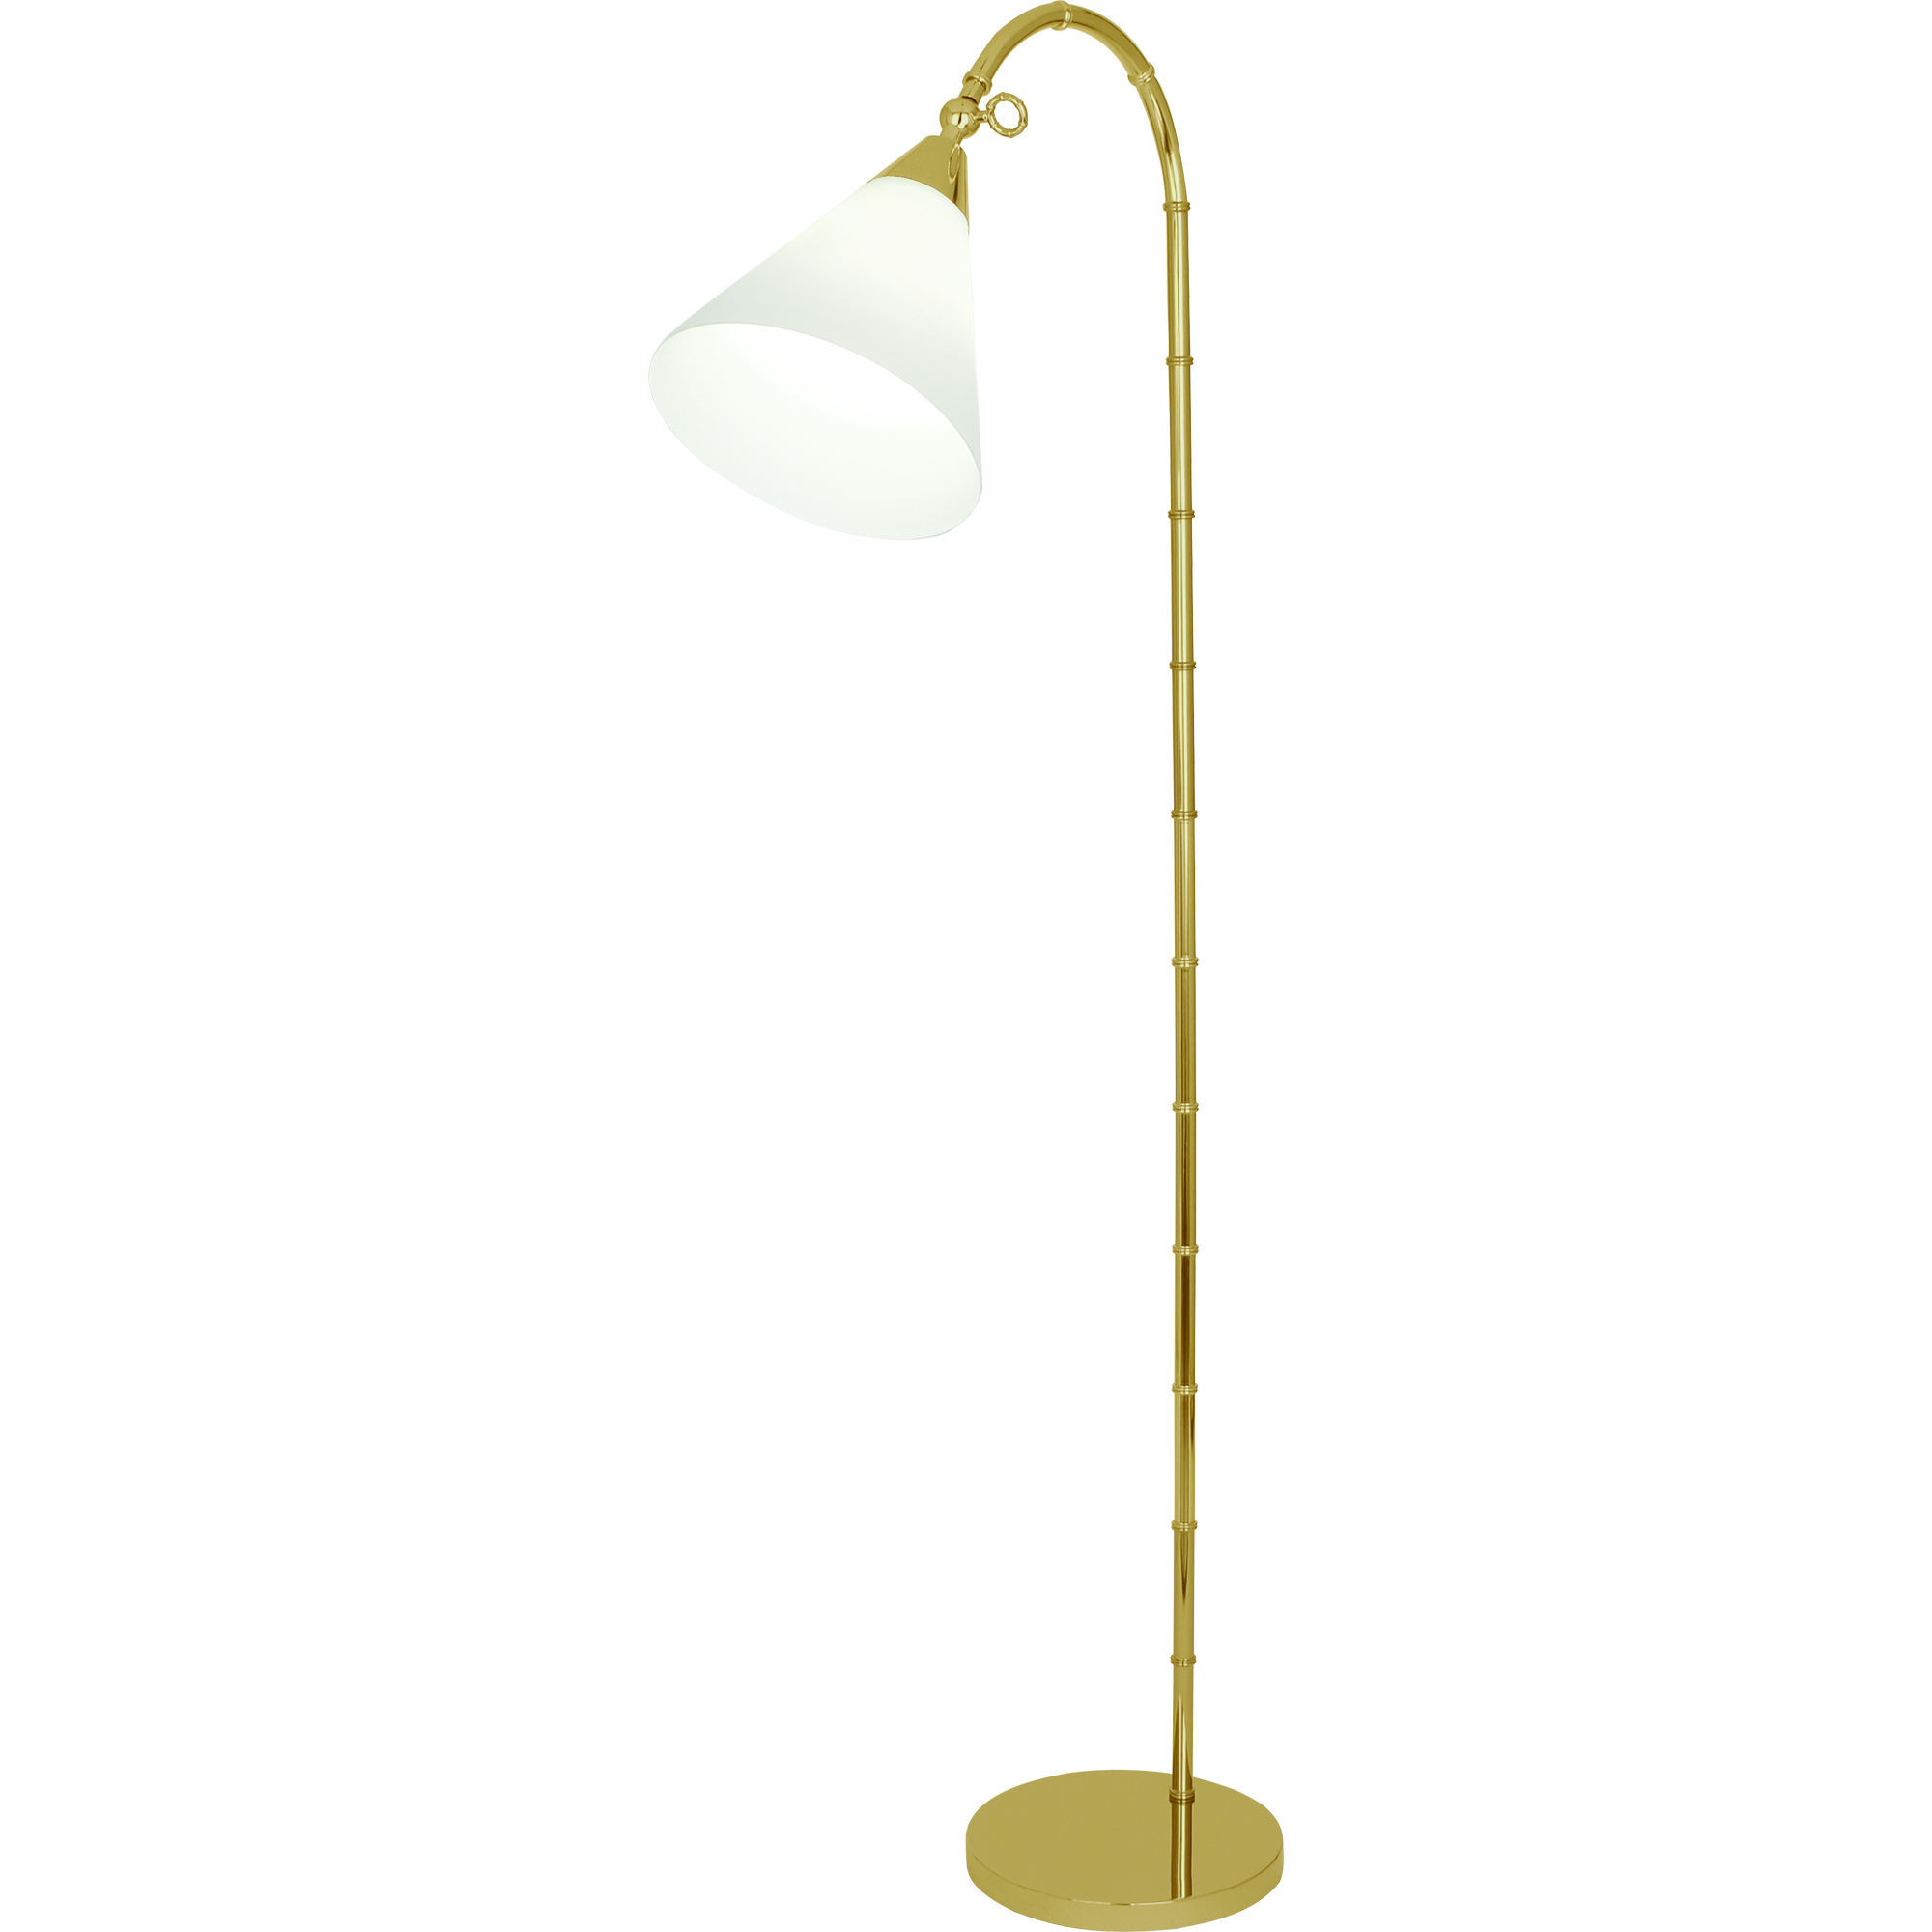 Jonathan Adler Meurice Floor Lamp Style #645G